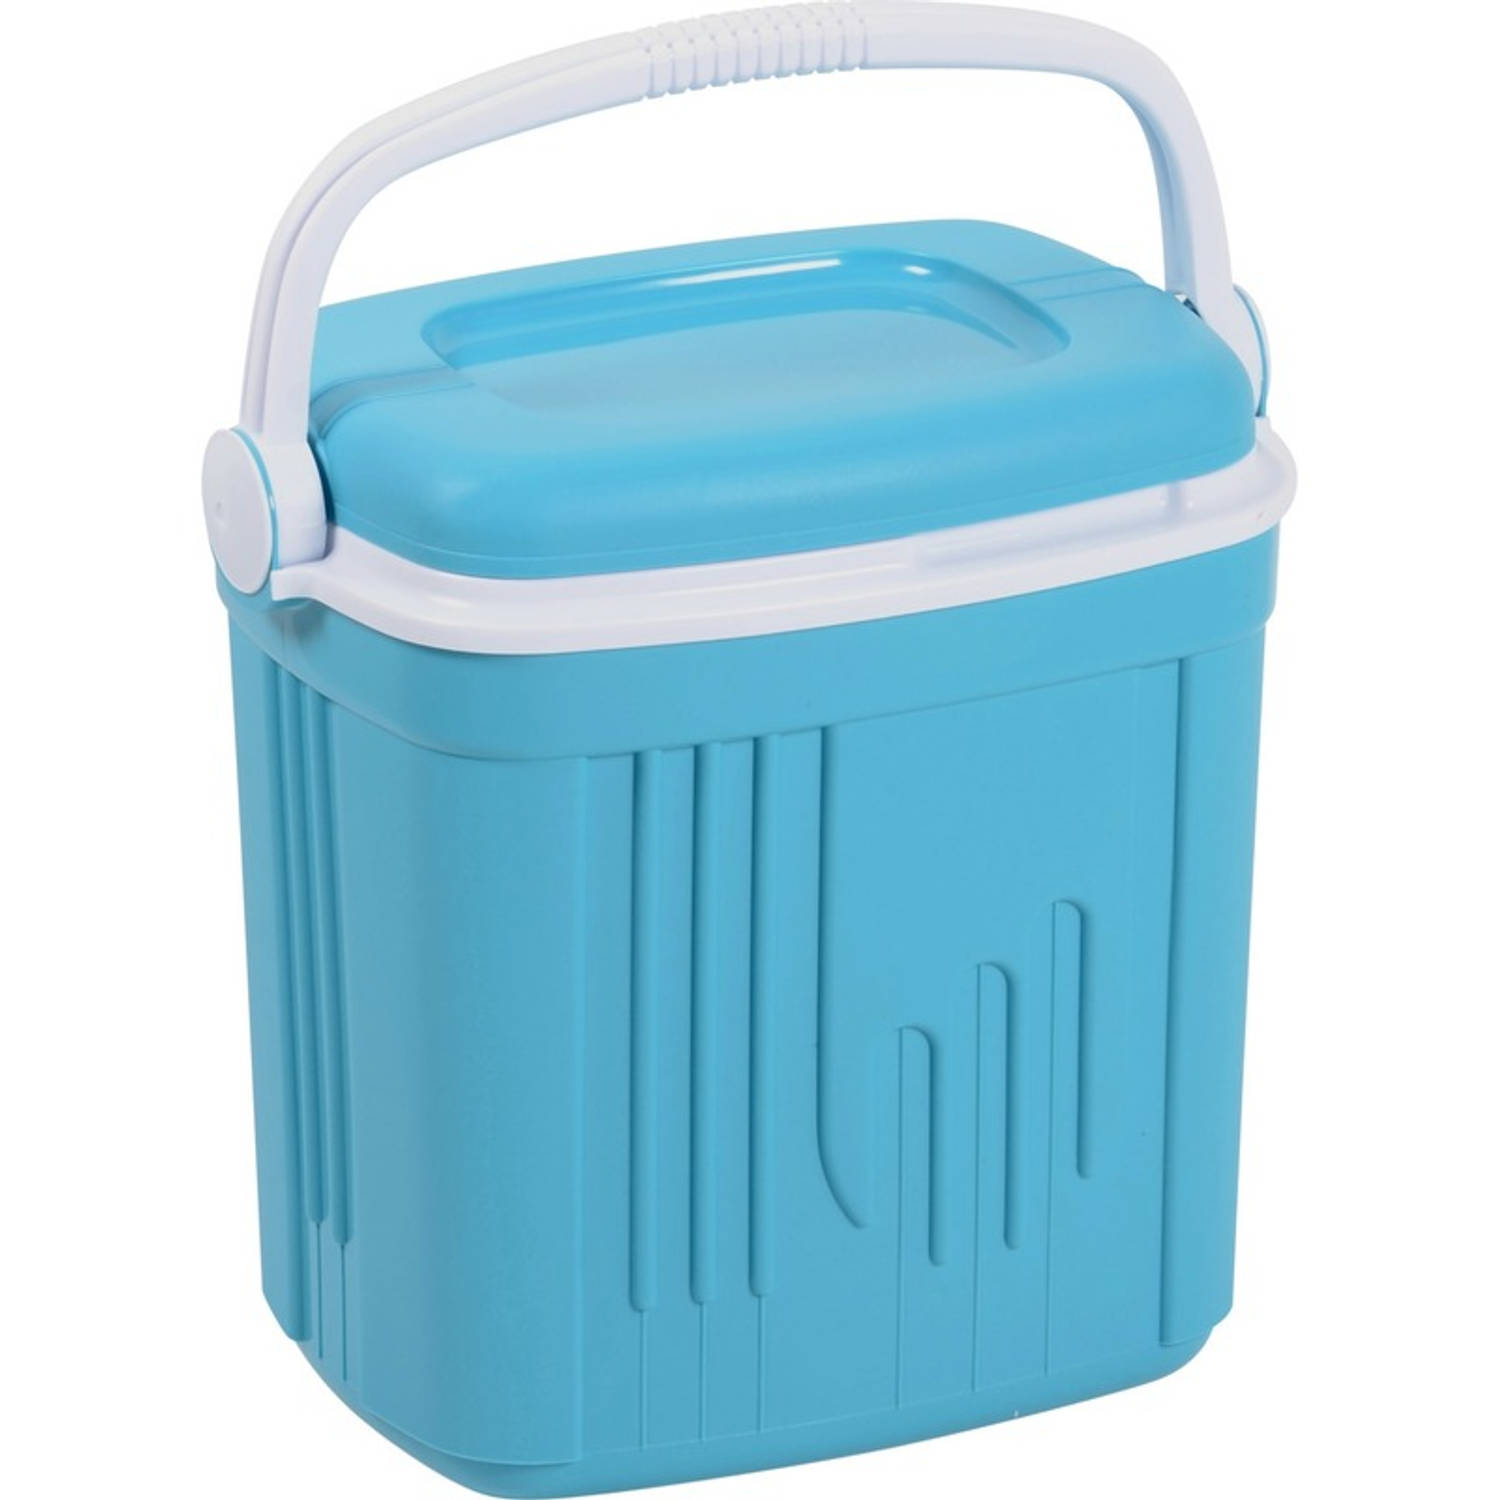 Koelbox kunststof blauw 20 liter Koelboxen voor onderweg